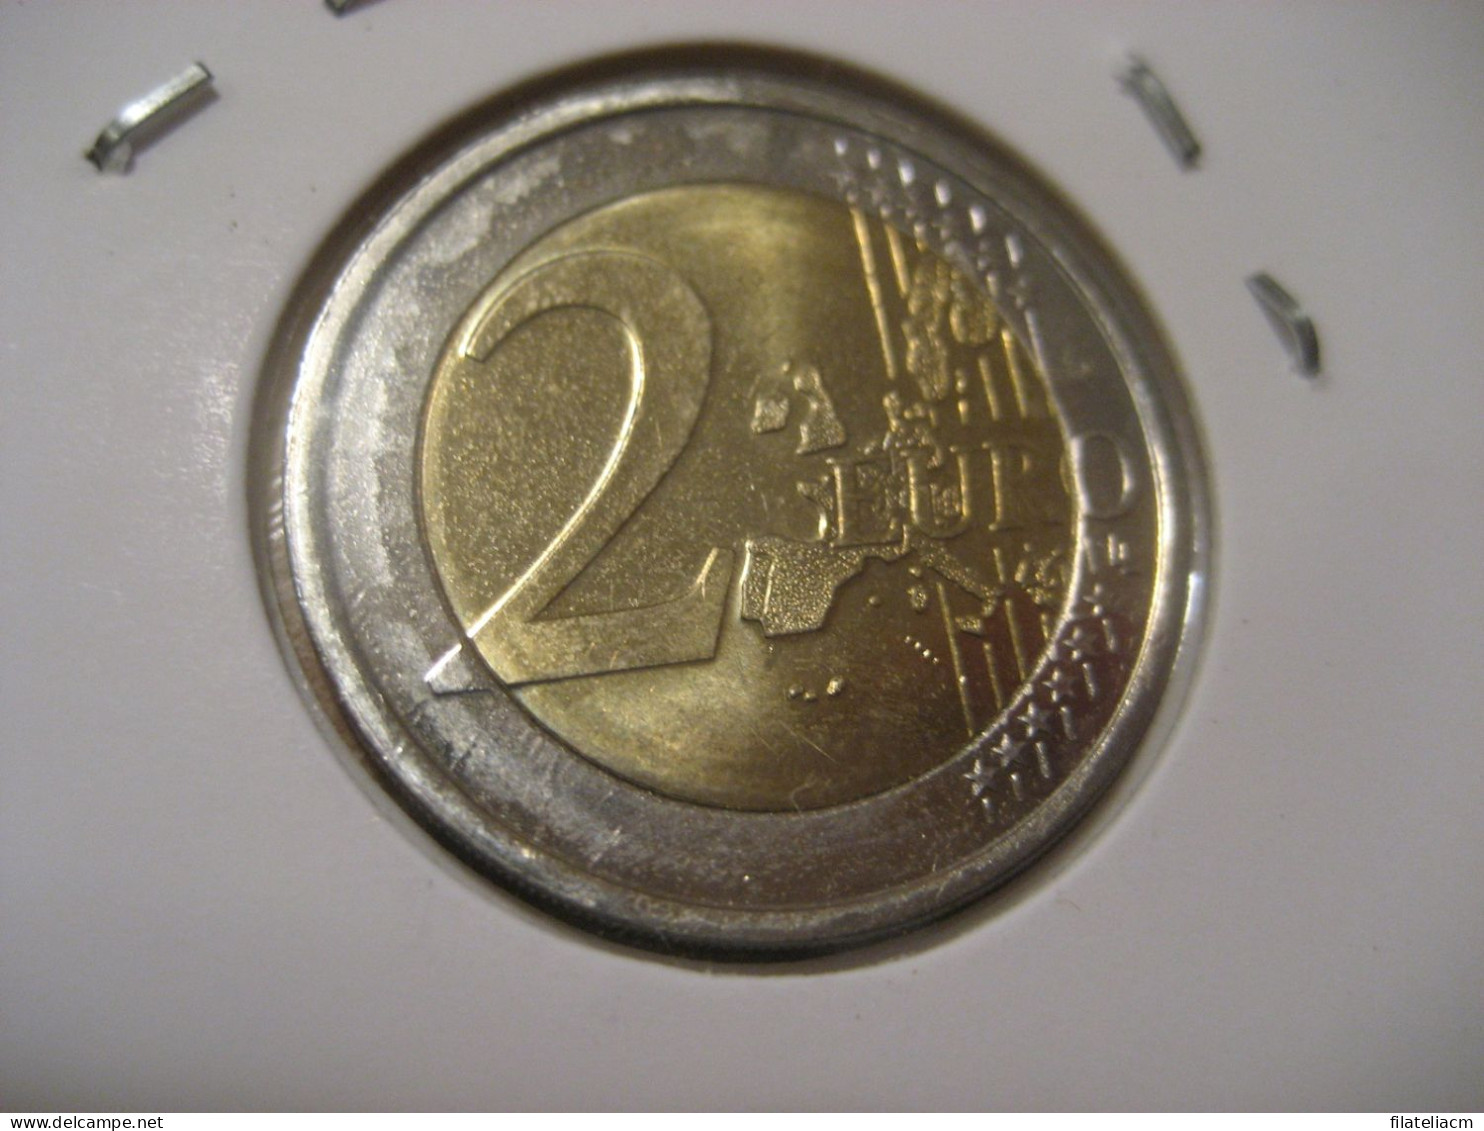 2 EURO 1999 Very Good Condition Eur Euros Coin FINLAND Finlande Finlandia - Finlandia